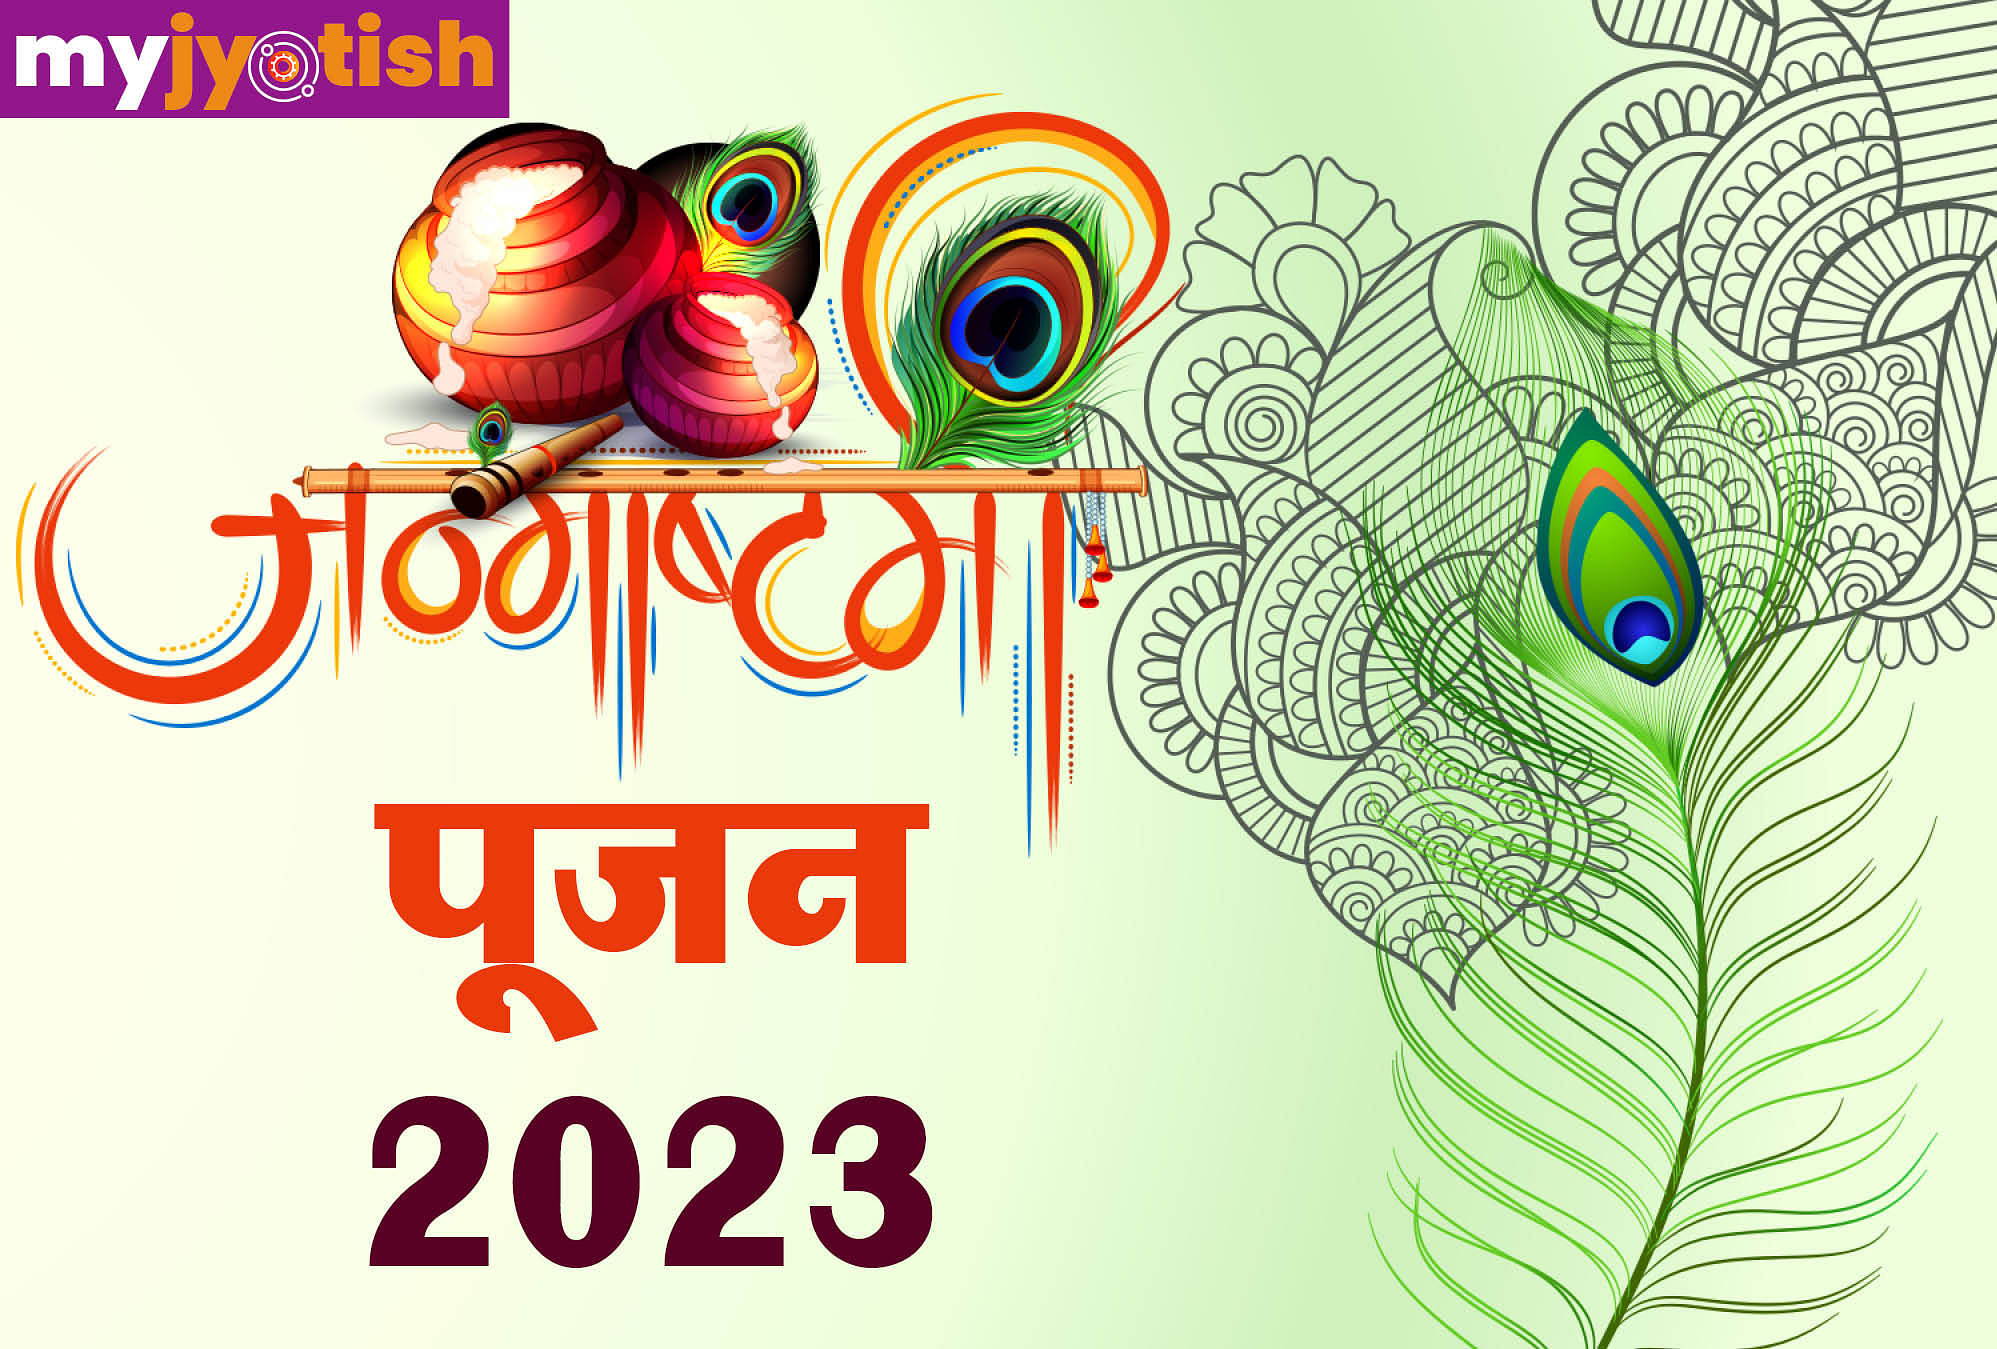 Janmashtami 2023 : विदेशों में भी मनाई जाती है जन्माष्टमी जानें भक्ति के विदेशी रंग जन्माष्टमी के सं